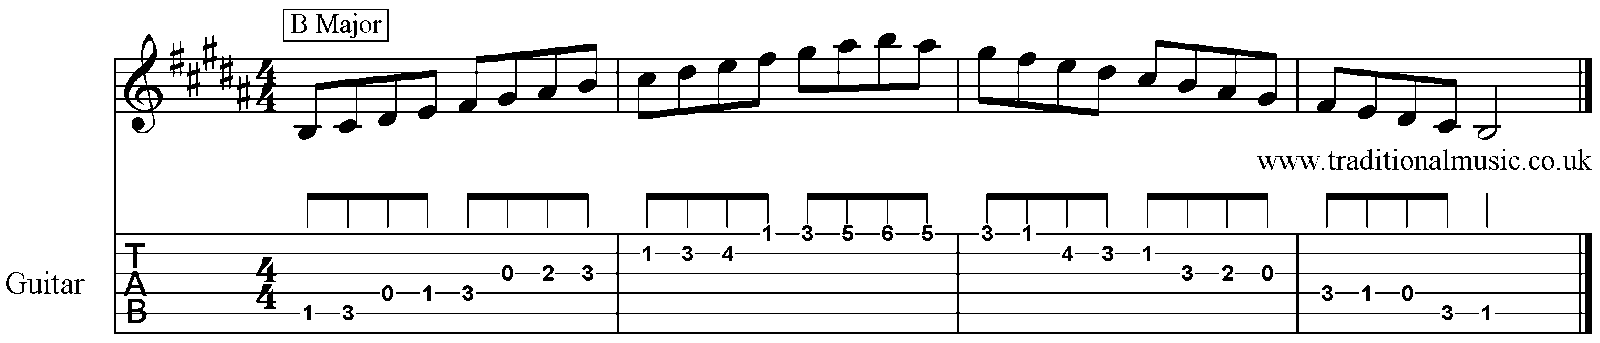 Major Scales for Banjo B 